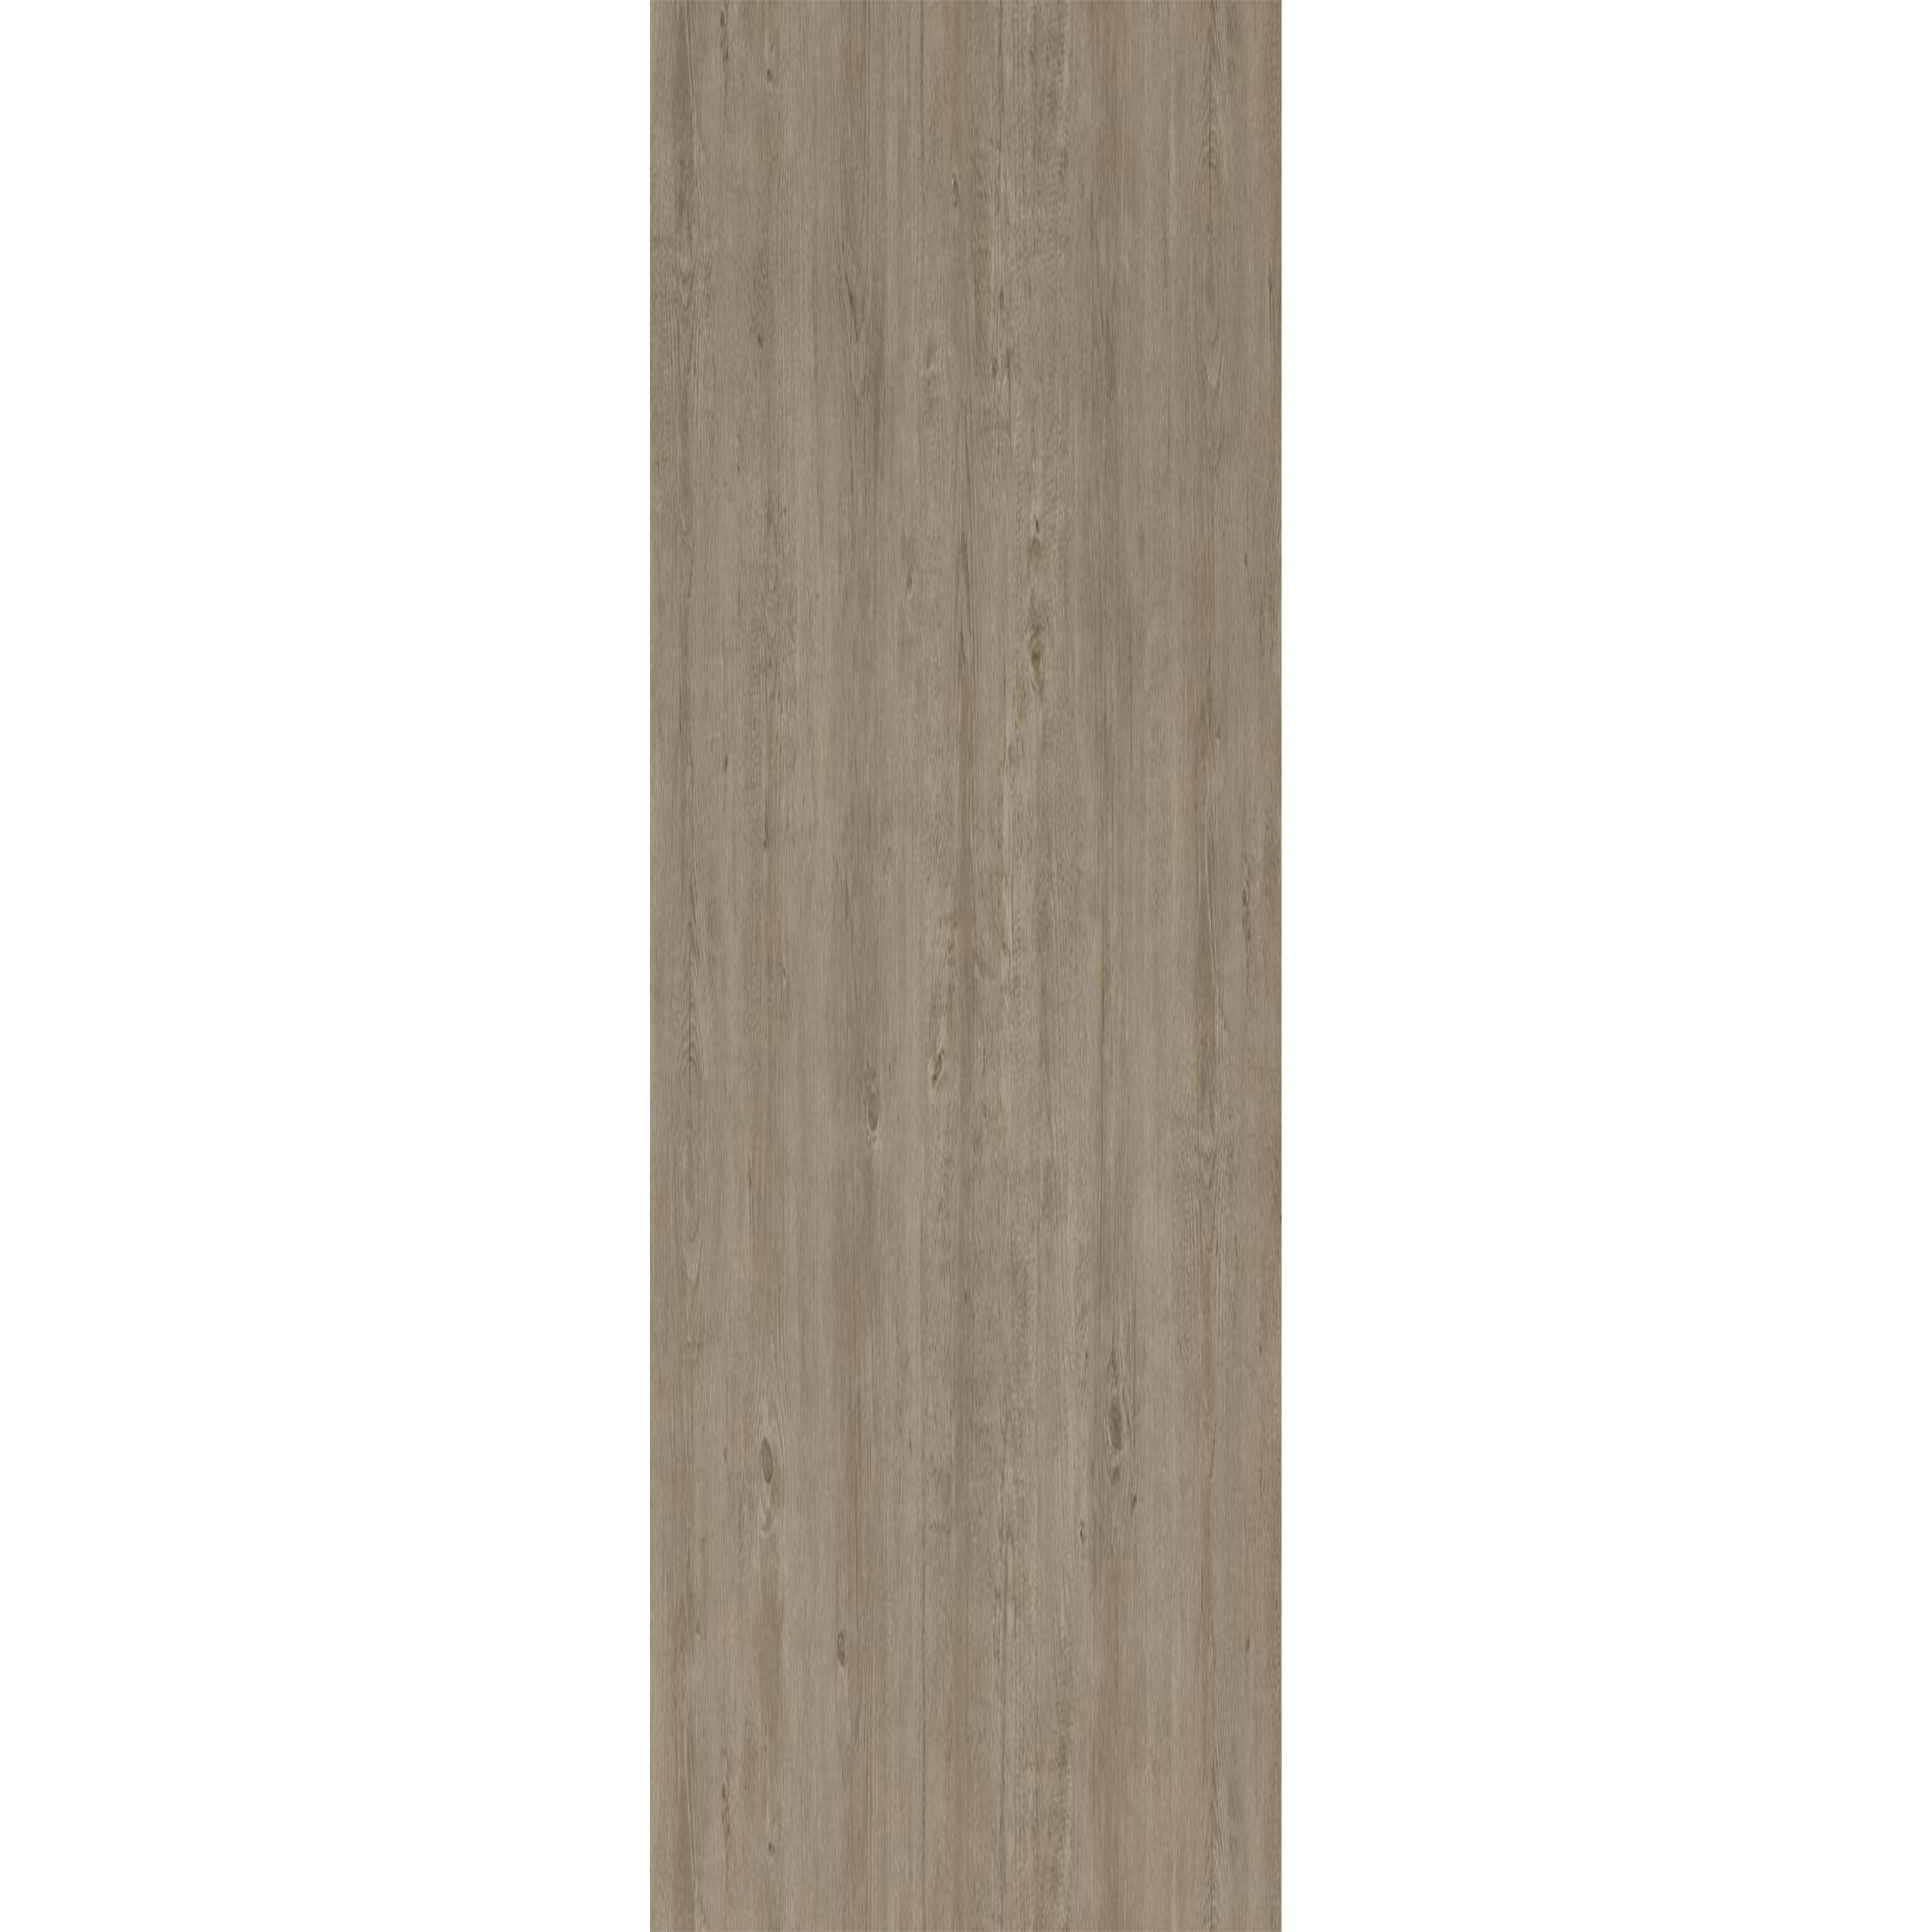 Vinylboden Klicksystem Elderwood Beige Grau 17,2x121cm